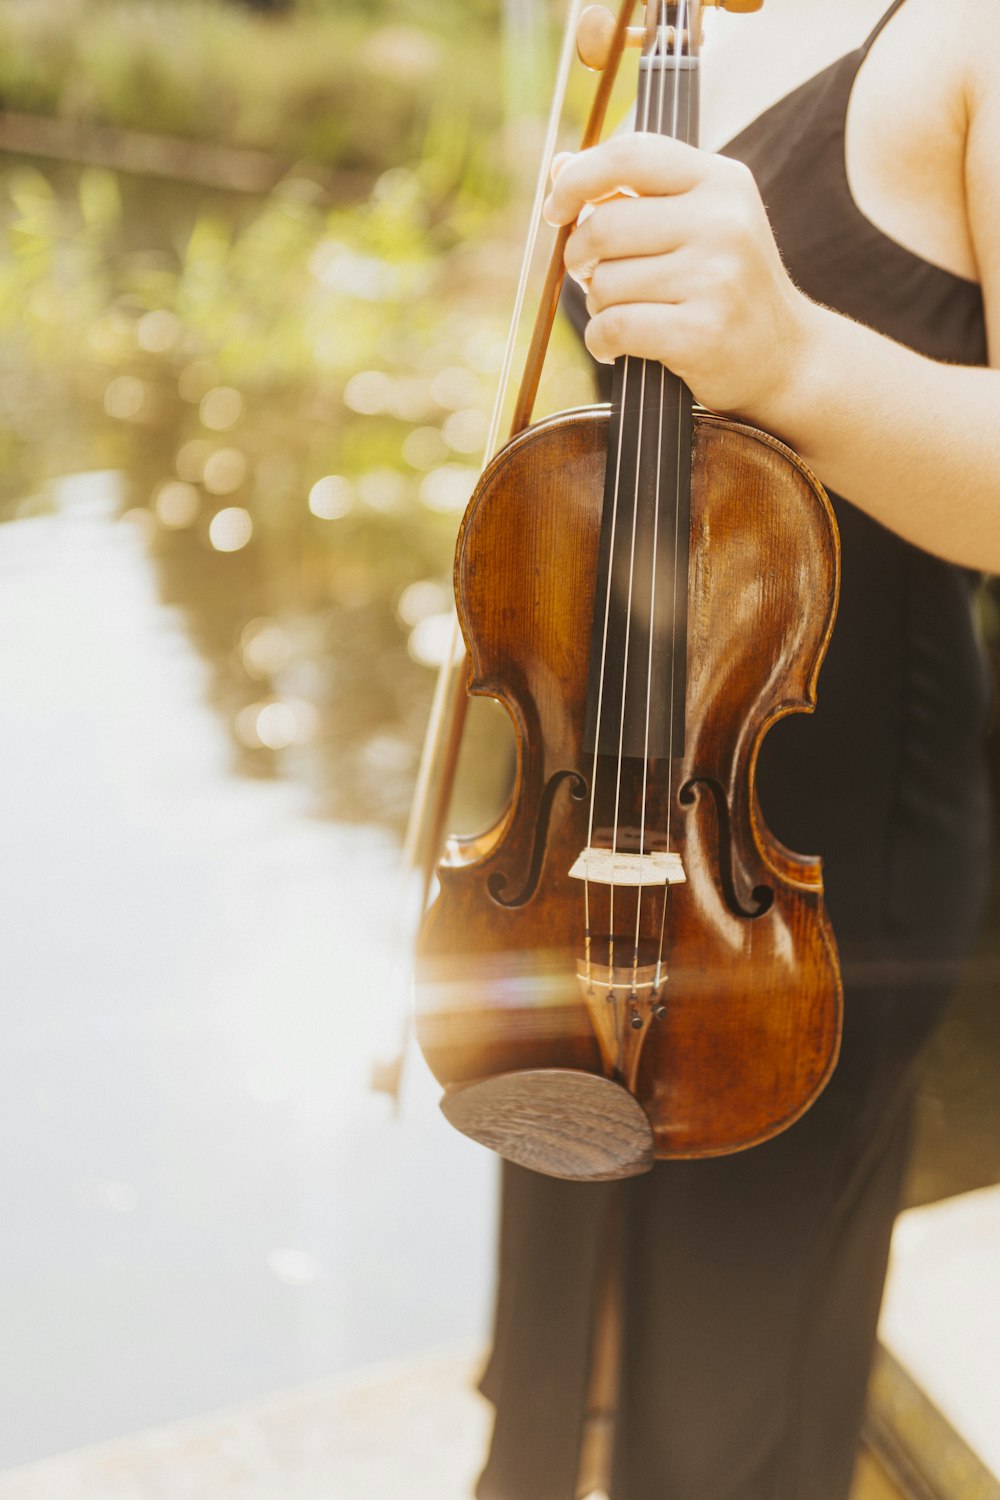 Una mujer sosteniendo un violín en su mano derecha